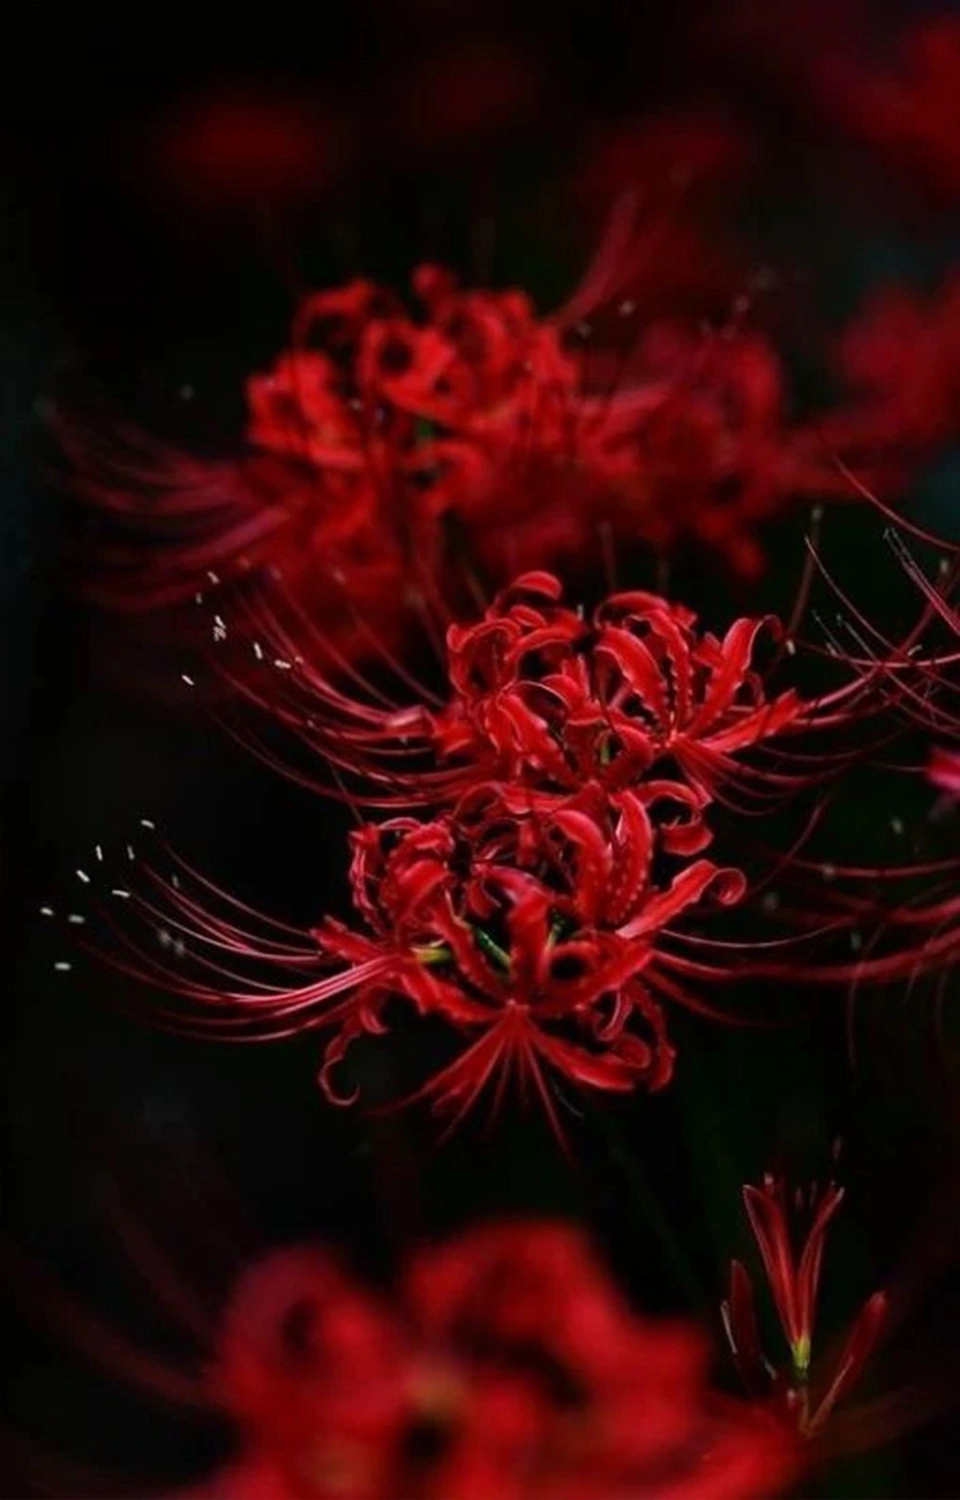  Hình ảnh nền hoa bỉ ngạn đỏ lòe chụp cận cho tới năng lượng điện thoại